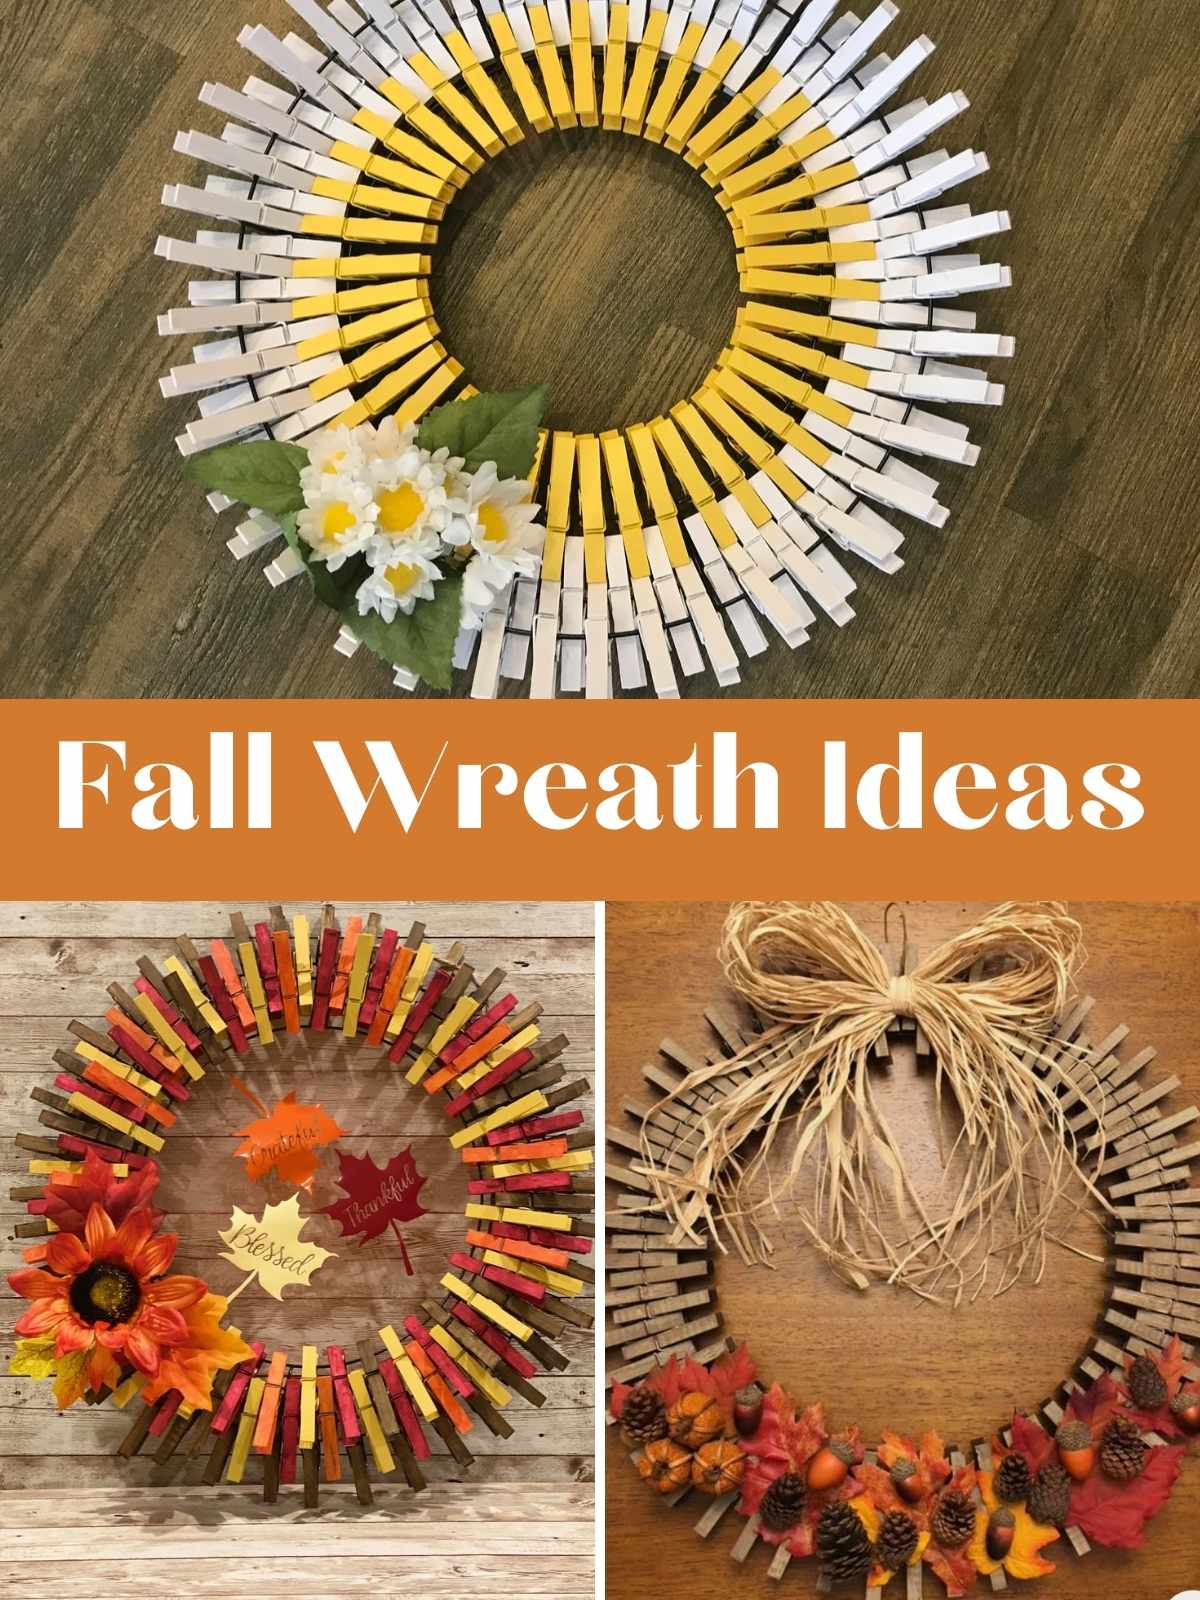 Fall Wreath Ideas. 3 Adorable Wreaths, All Fall Themed.